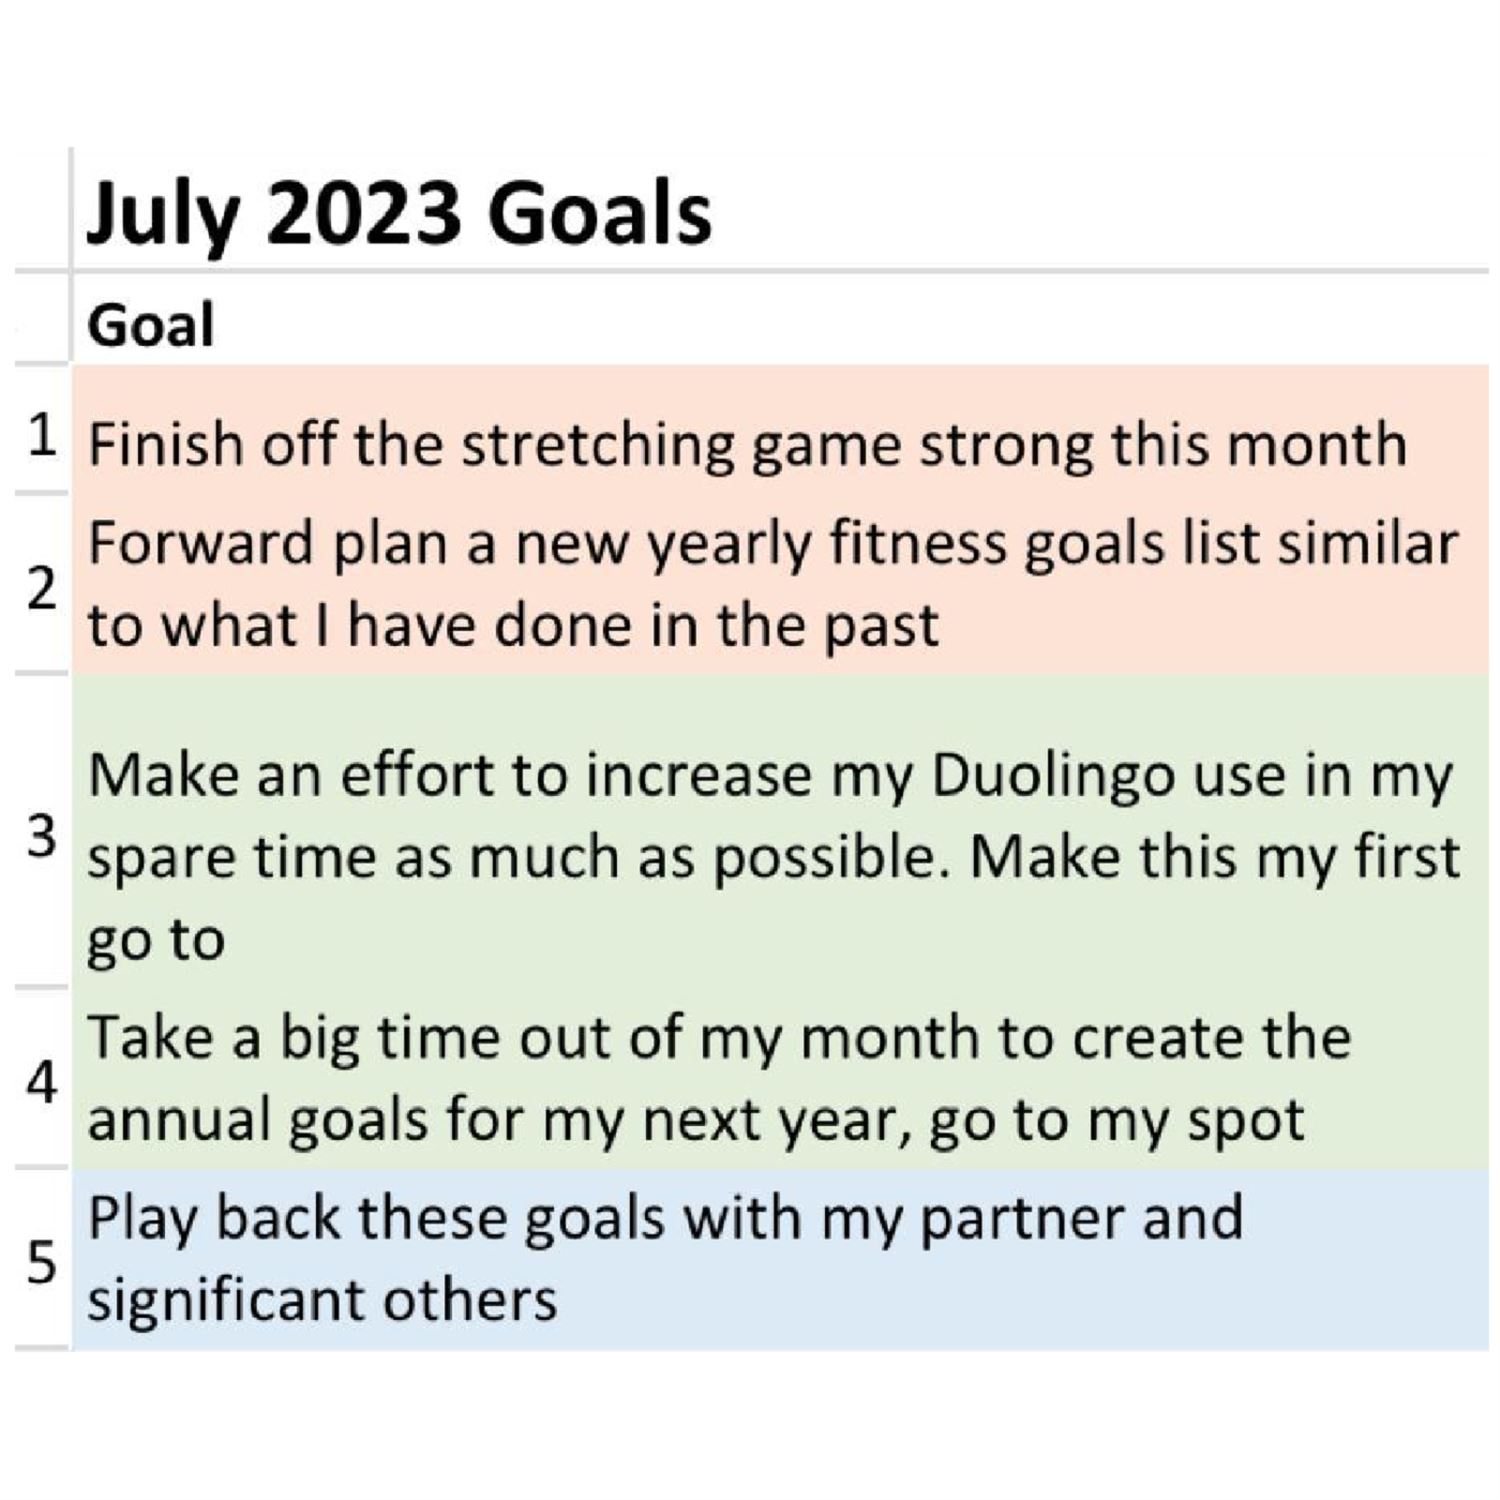 Juan's July 2023 Goals